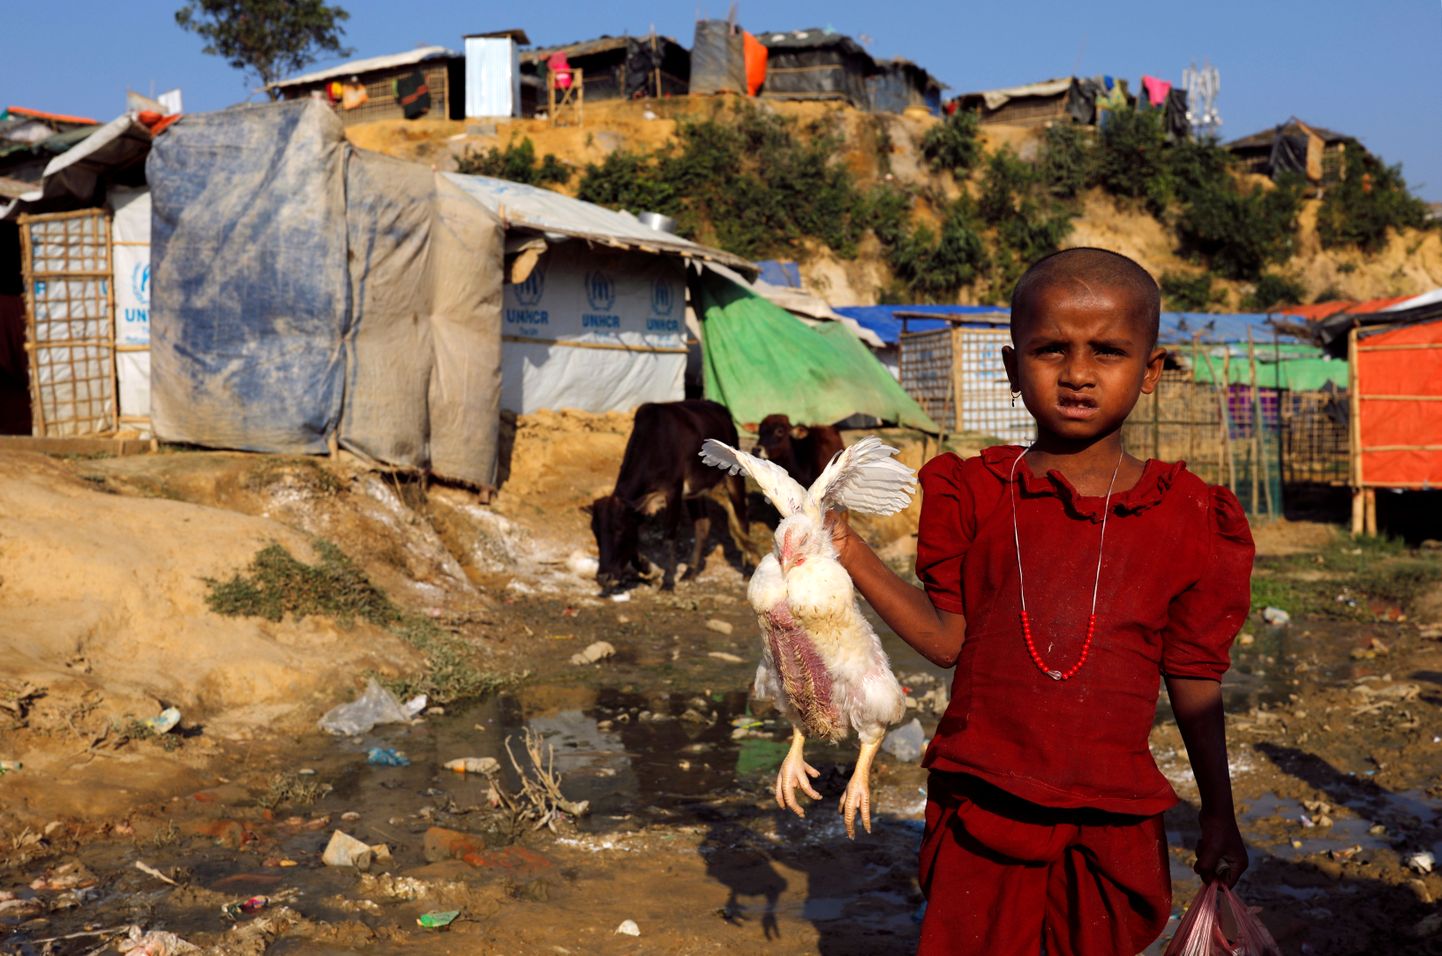 Põgenikust rohingja Banghadeshis Kutupalongi põgenikekeskuses. Amnesty hinnangul võiks rongingjade tagakiusamist Myanmaris võrrelda apartheidiga Lõuna-Aafrika Vabariigis.